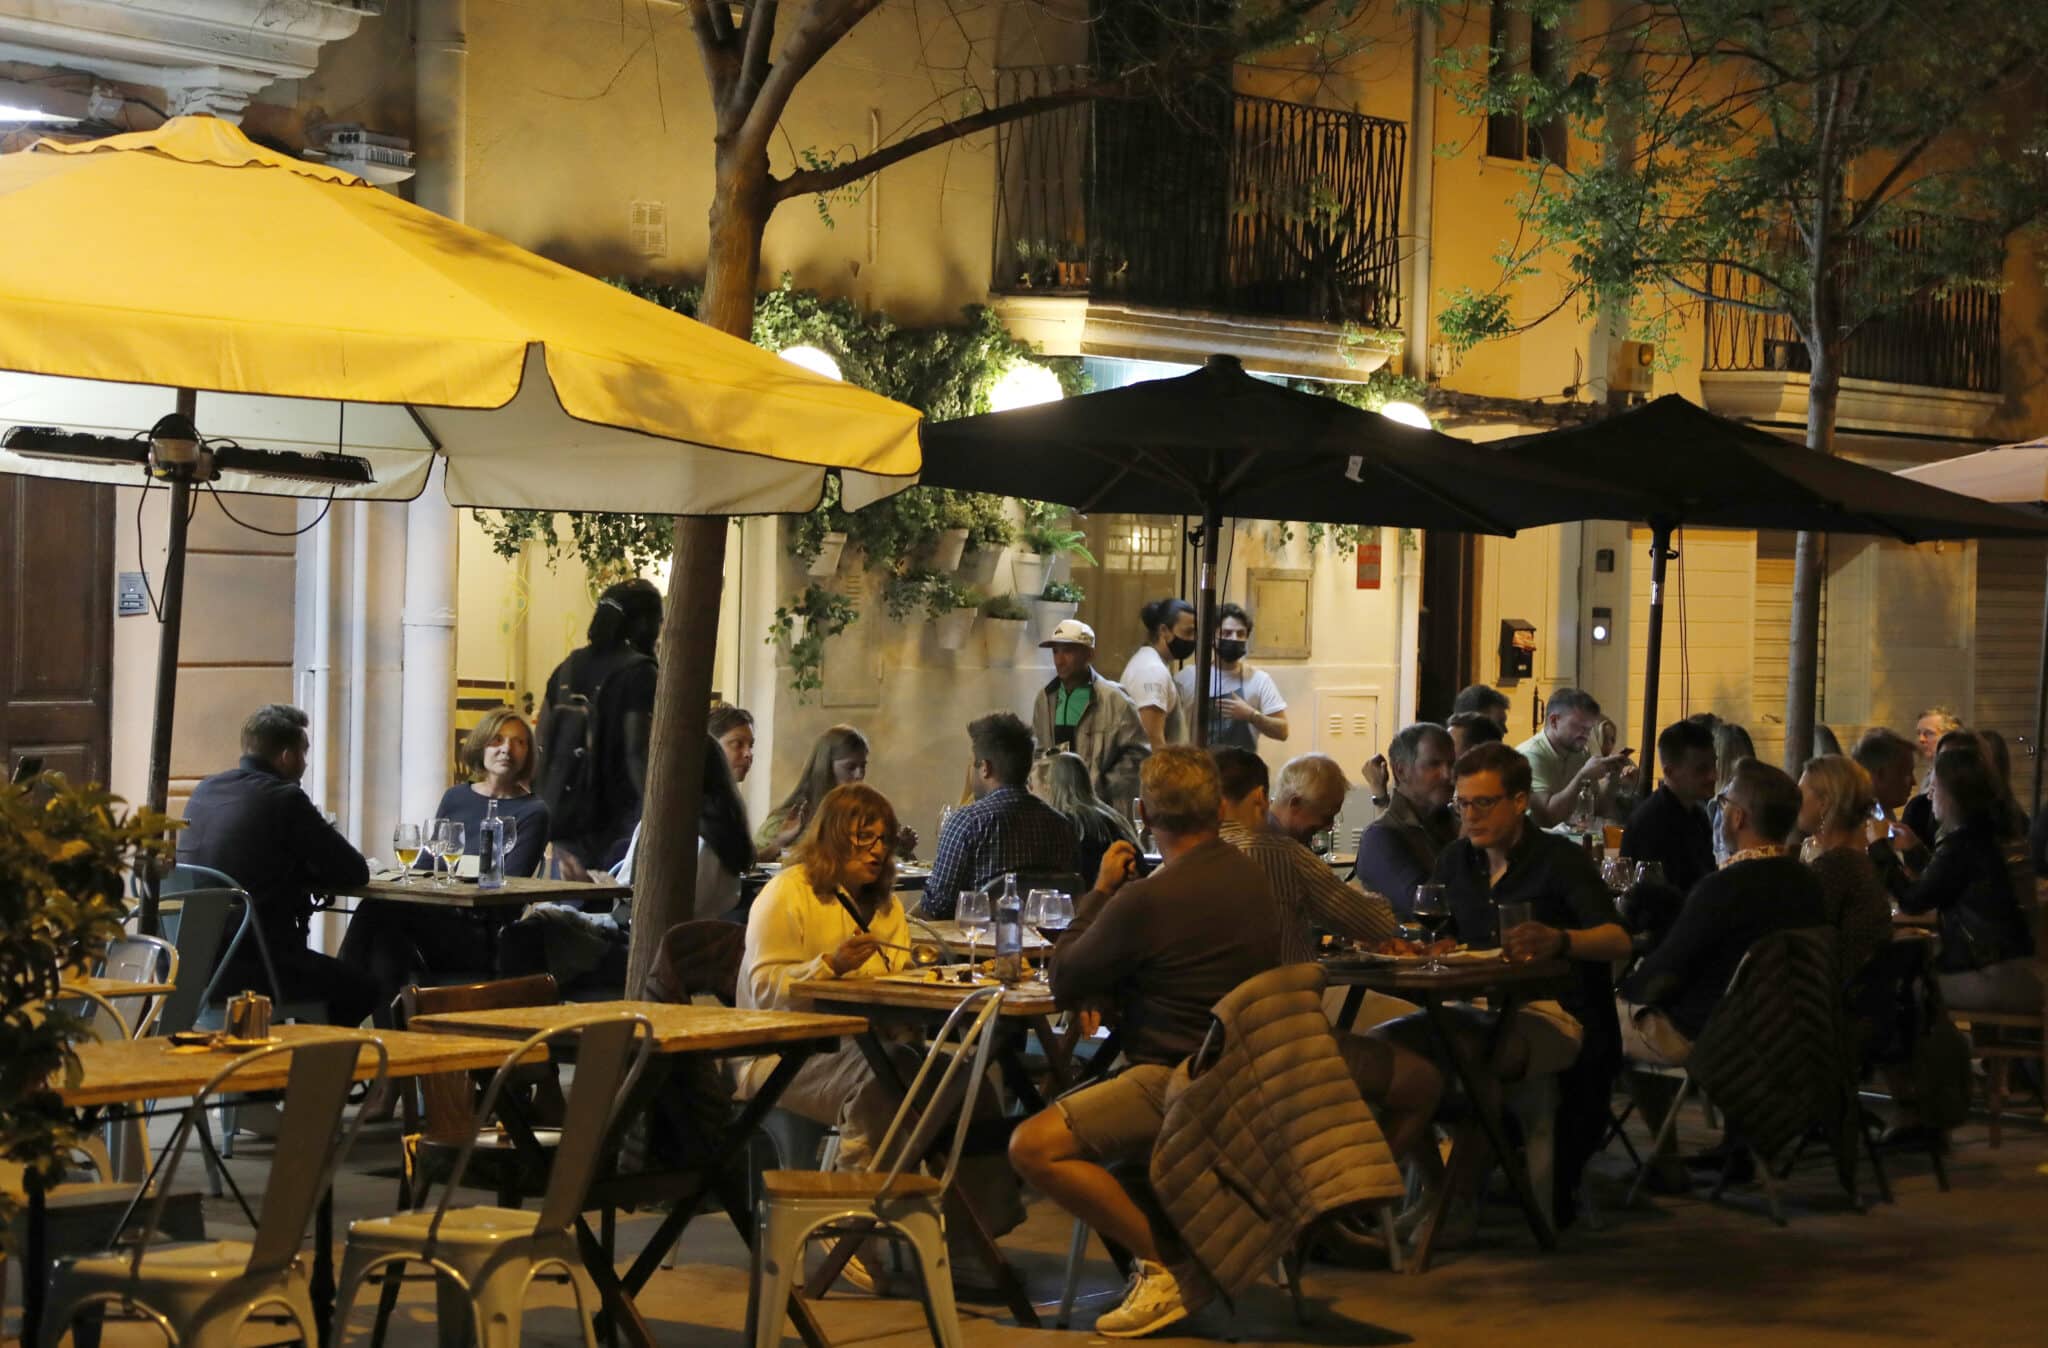 Baleares elimina el límite a encuentros sociales nocturnos en Mallorca y Formentera